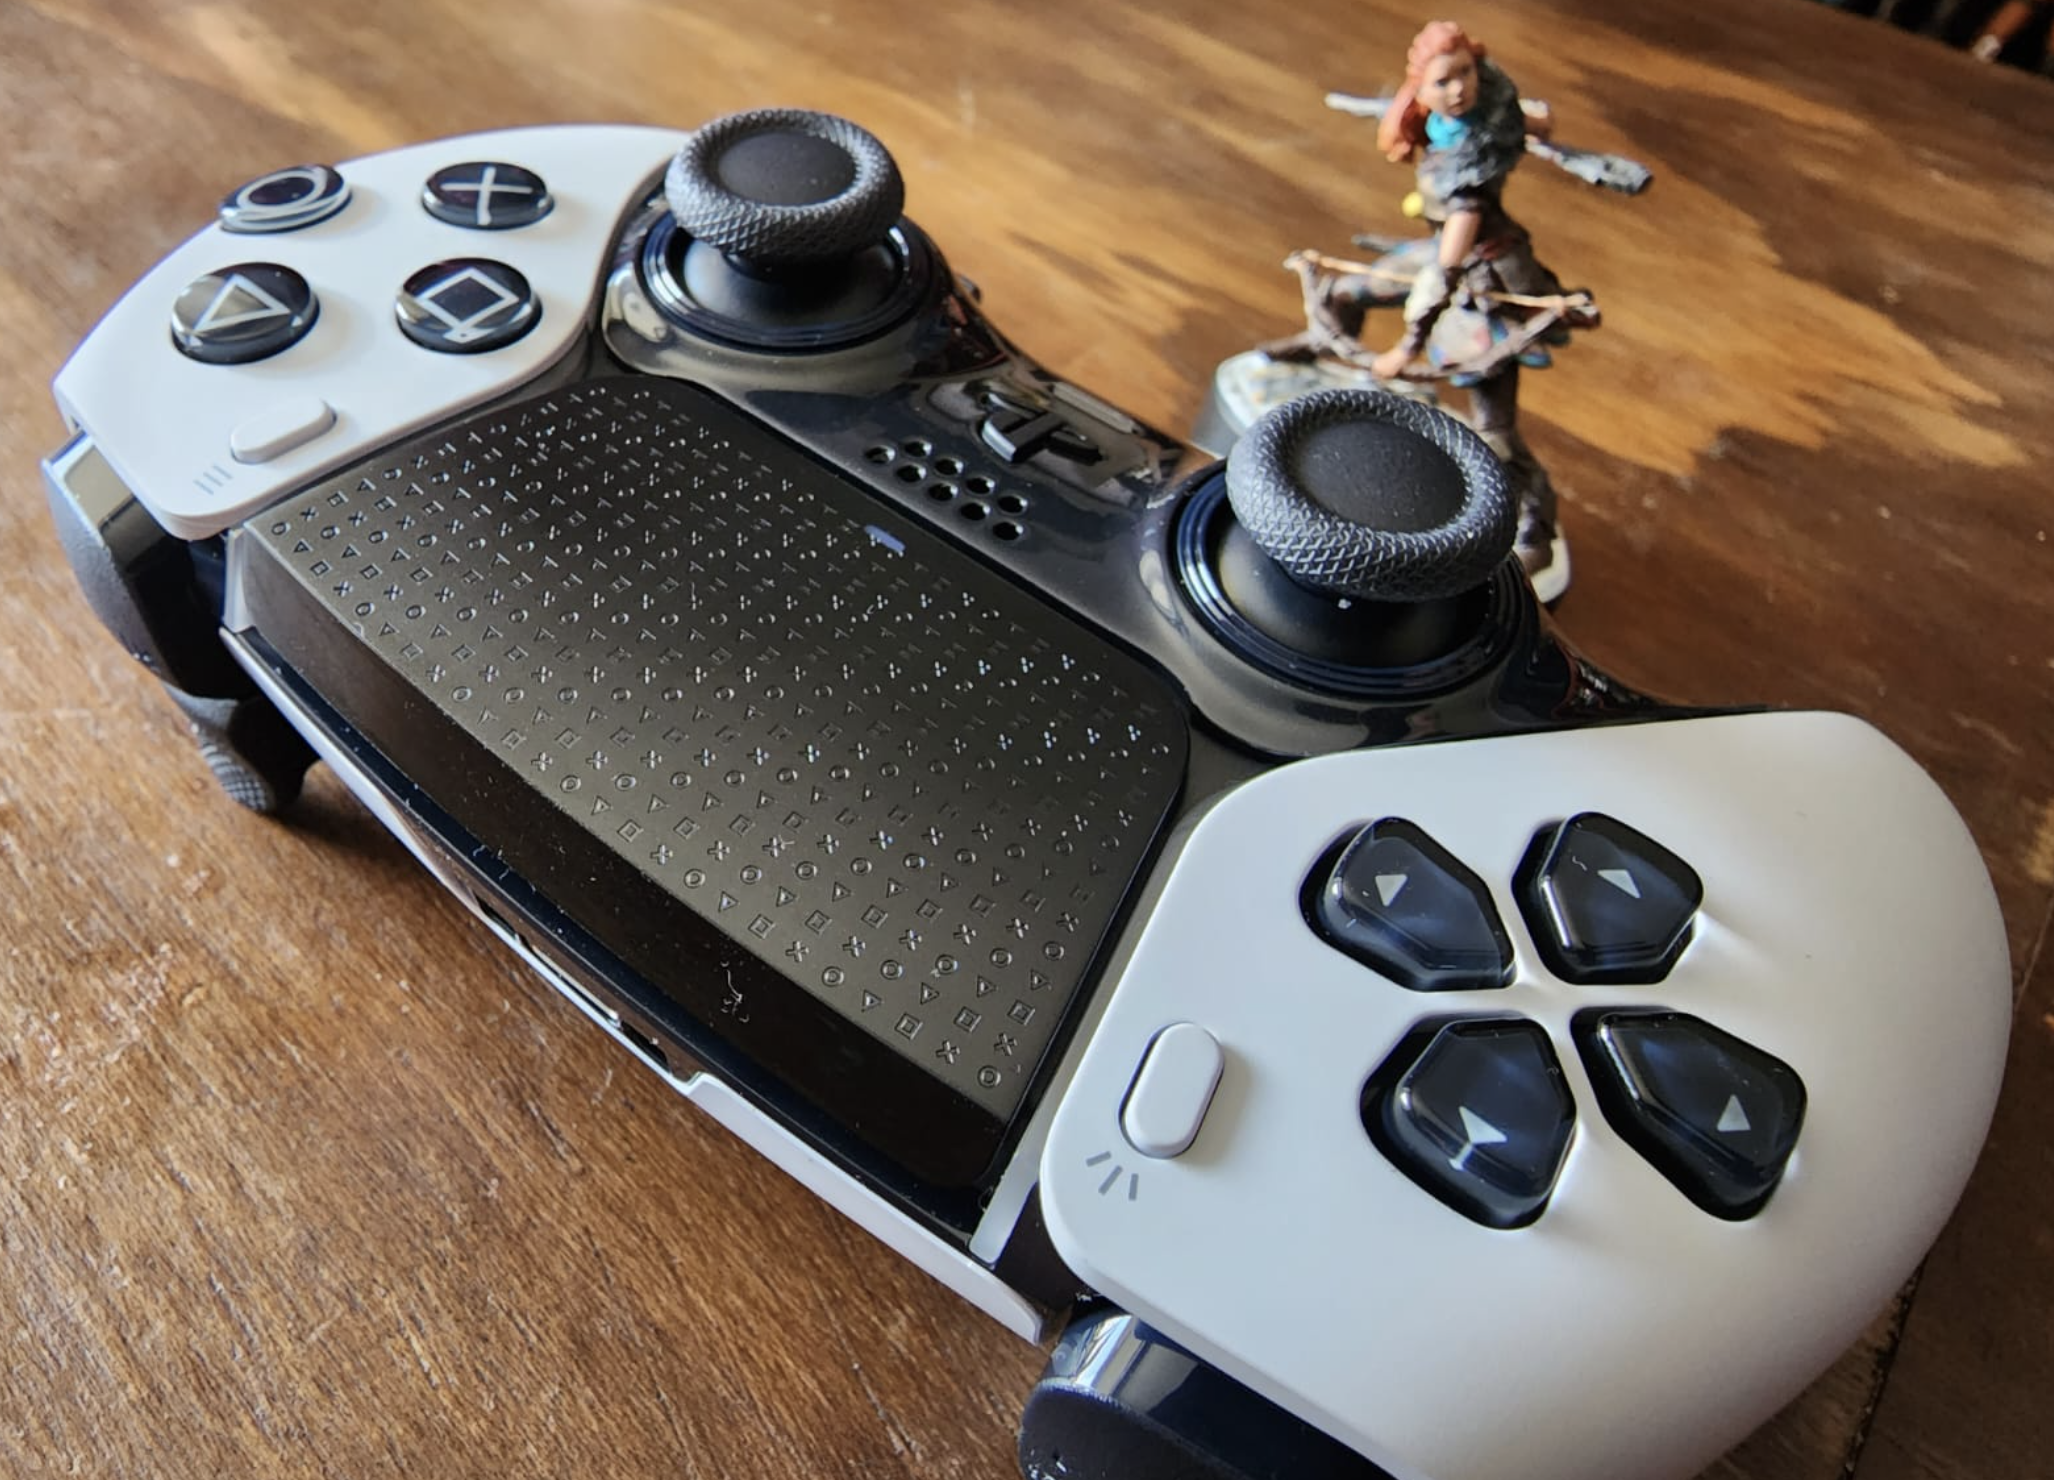 Scuf presenta su mando para PS5, un DualSense personalizable a